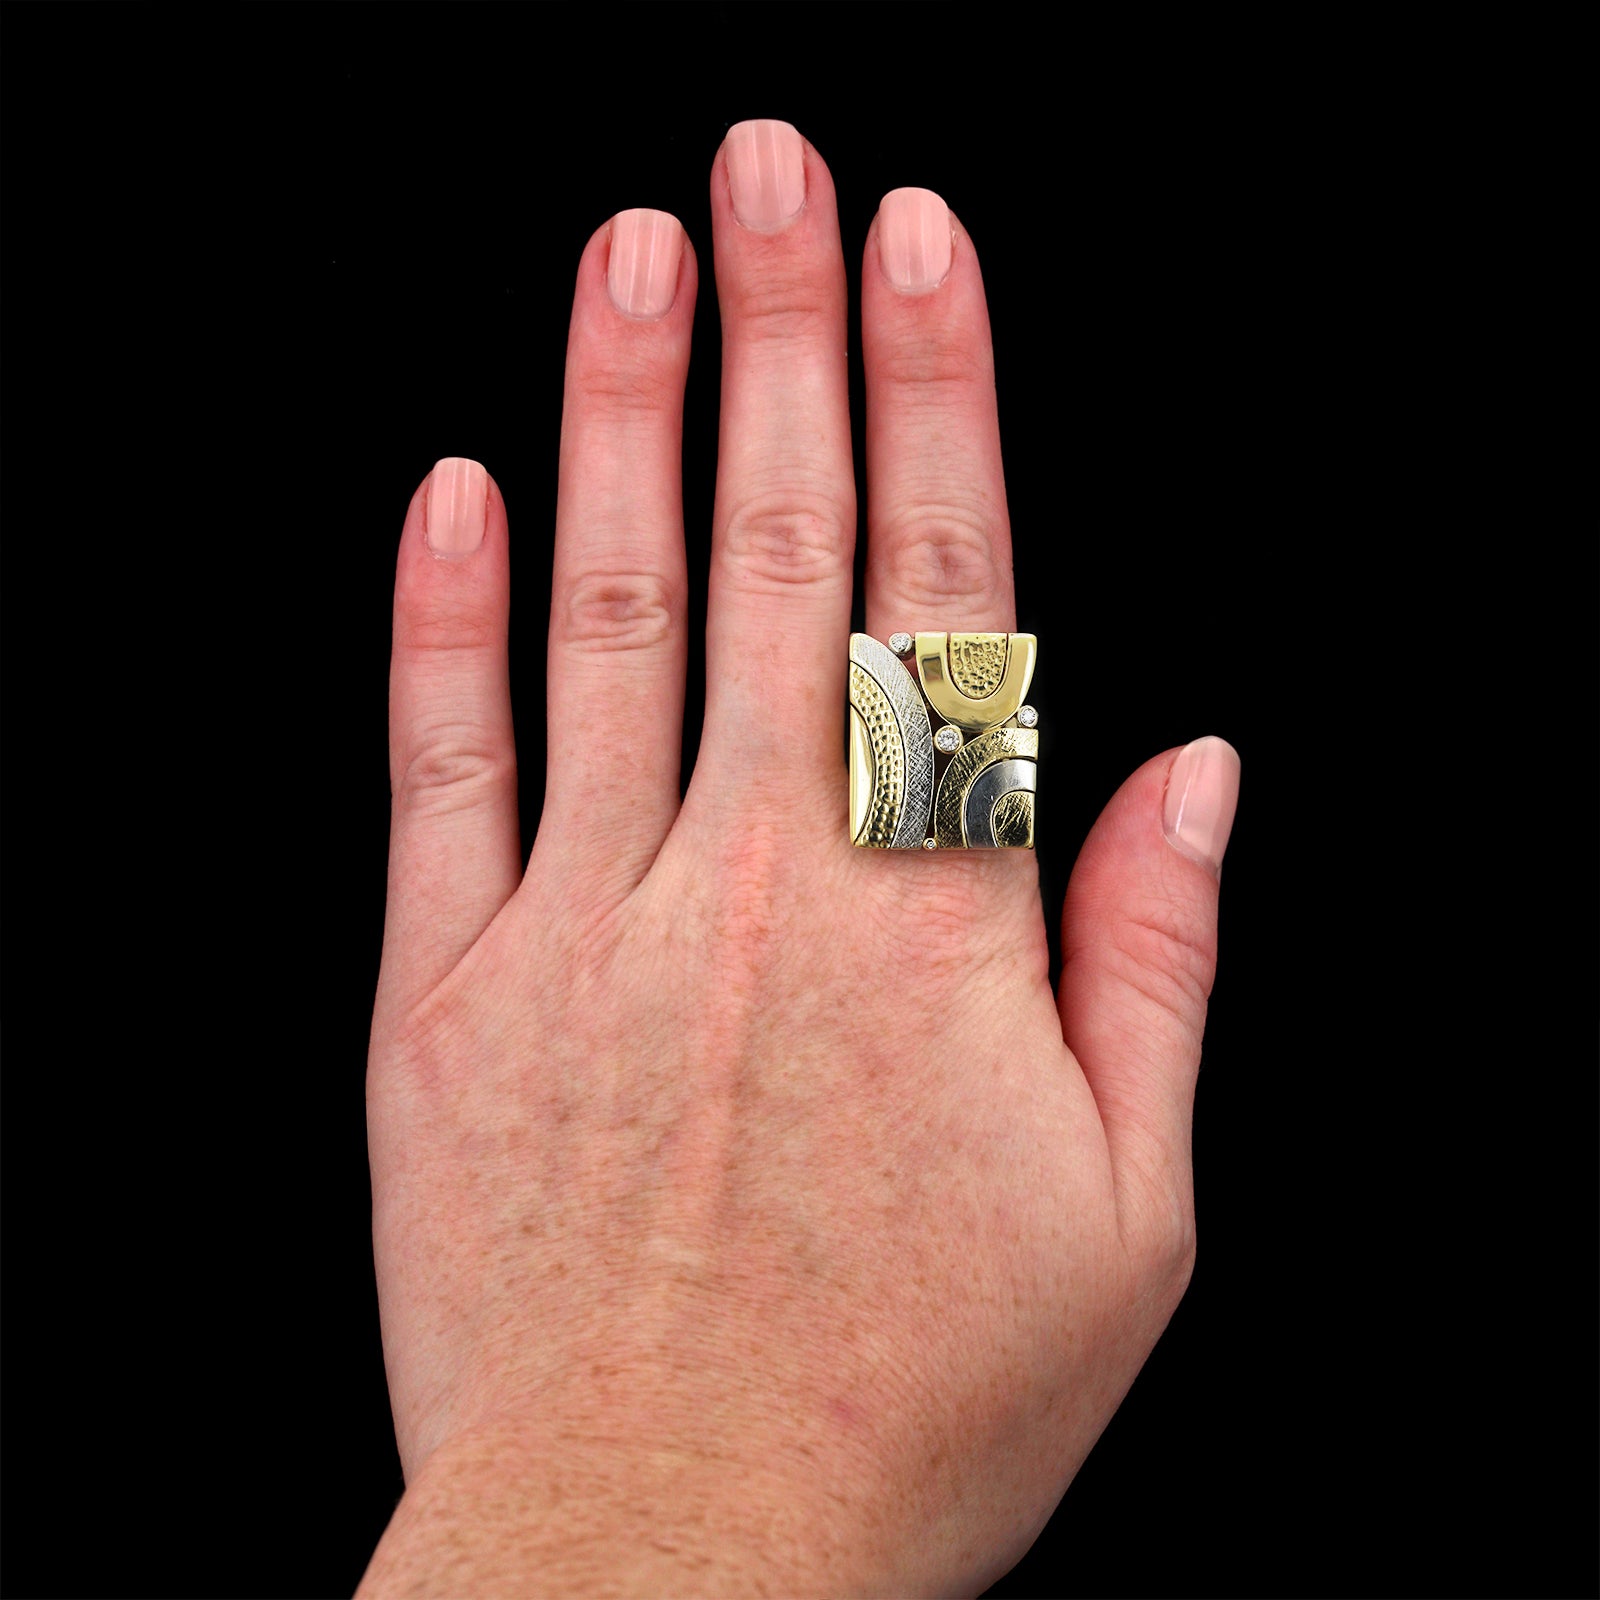 18K Two-tone Gold Estate Ponte Vecchio Gioielli Diamond Ring